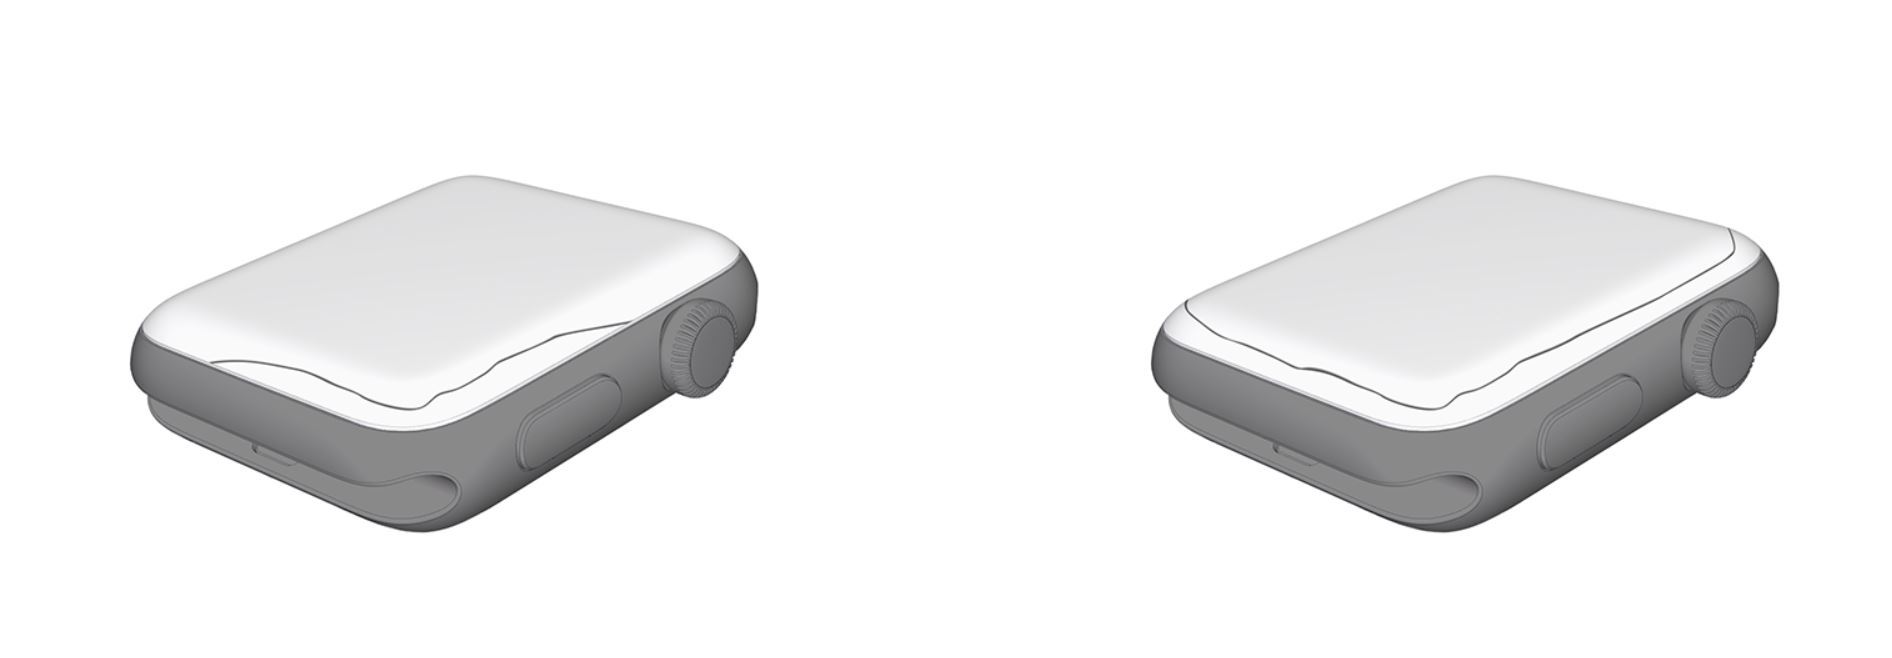 Apple Watch」の画面交換プログラム開始 Series 2と3のアルミモデルが 